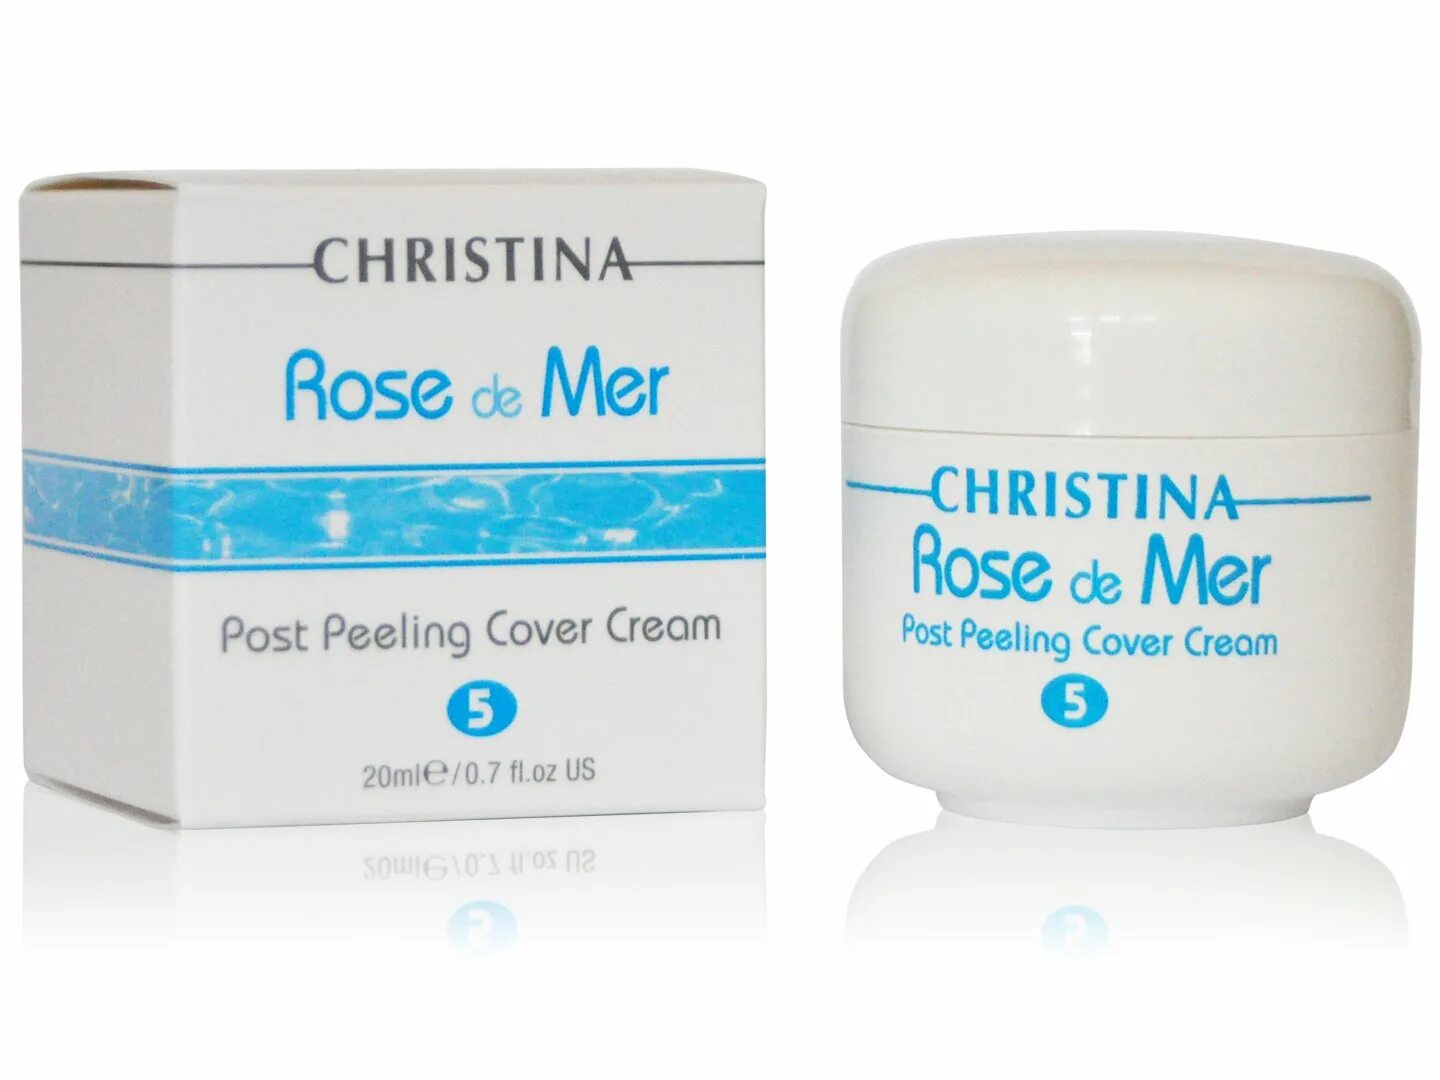 Крем после скраба. Пилинг Rose de mer Christina. Christina Rose de mer крем. Christina Rose de mer Post peeling Cover Cream 5.